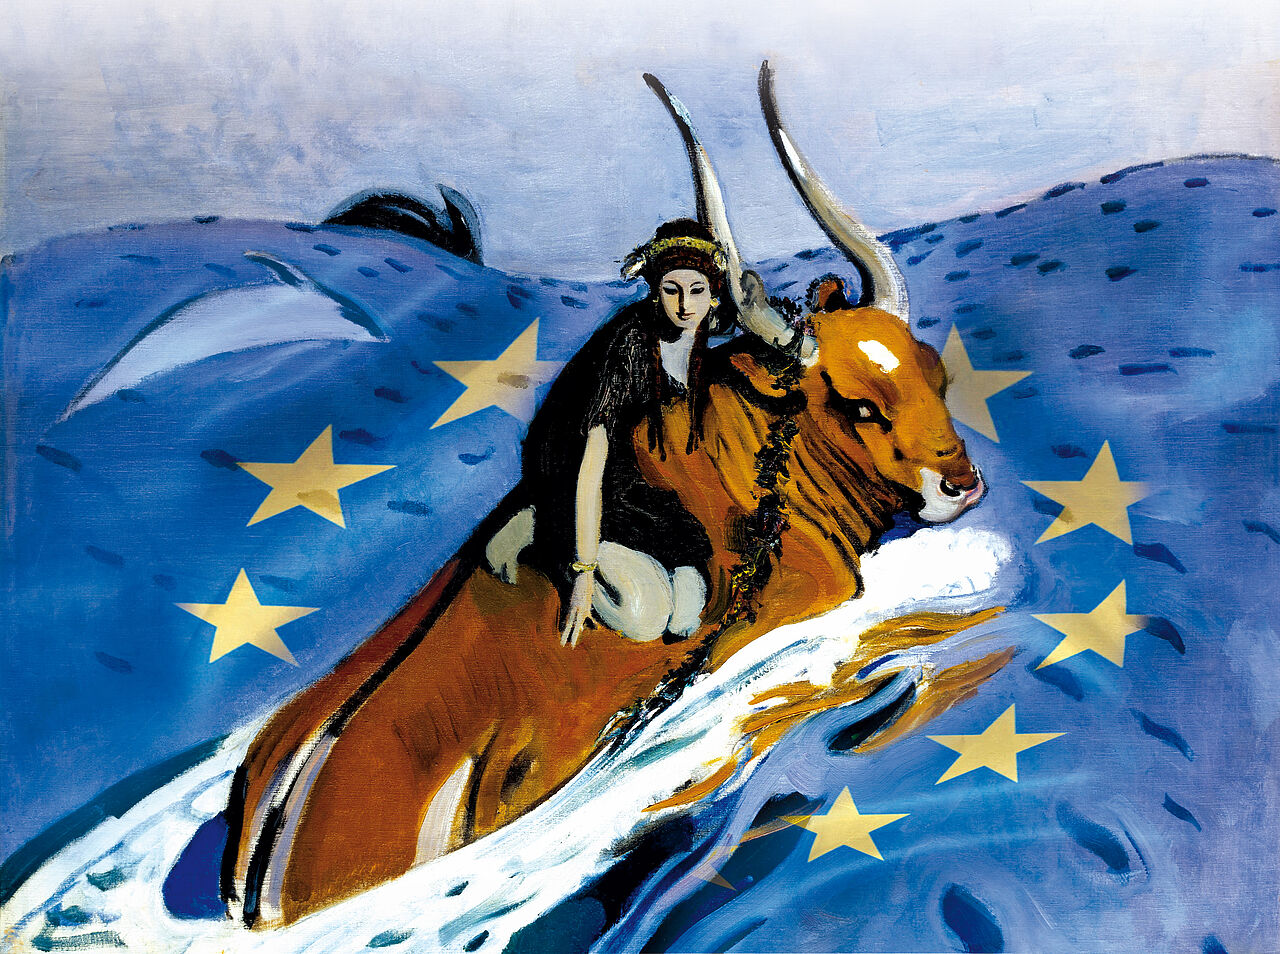 Europa und der Stier auf dem Meer/der Europaflagge